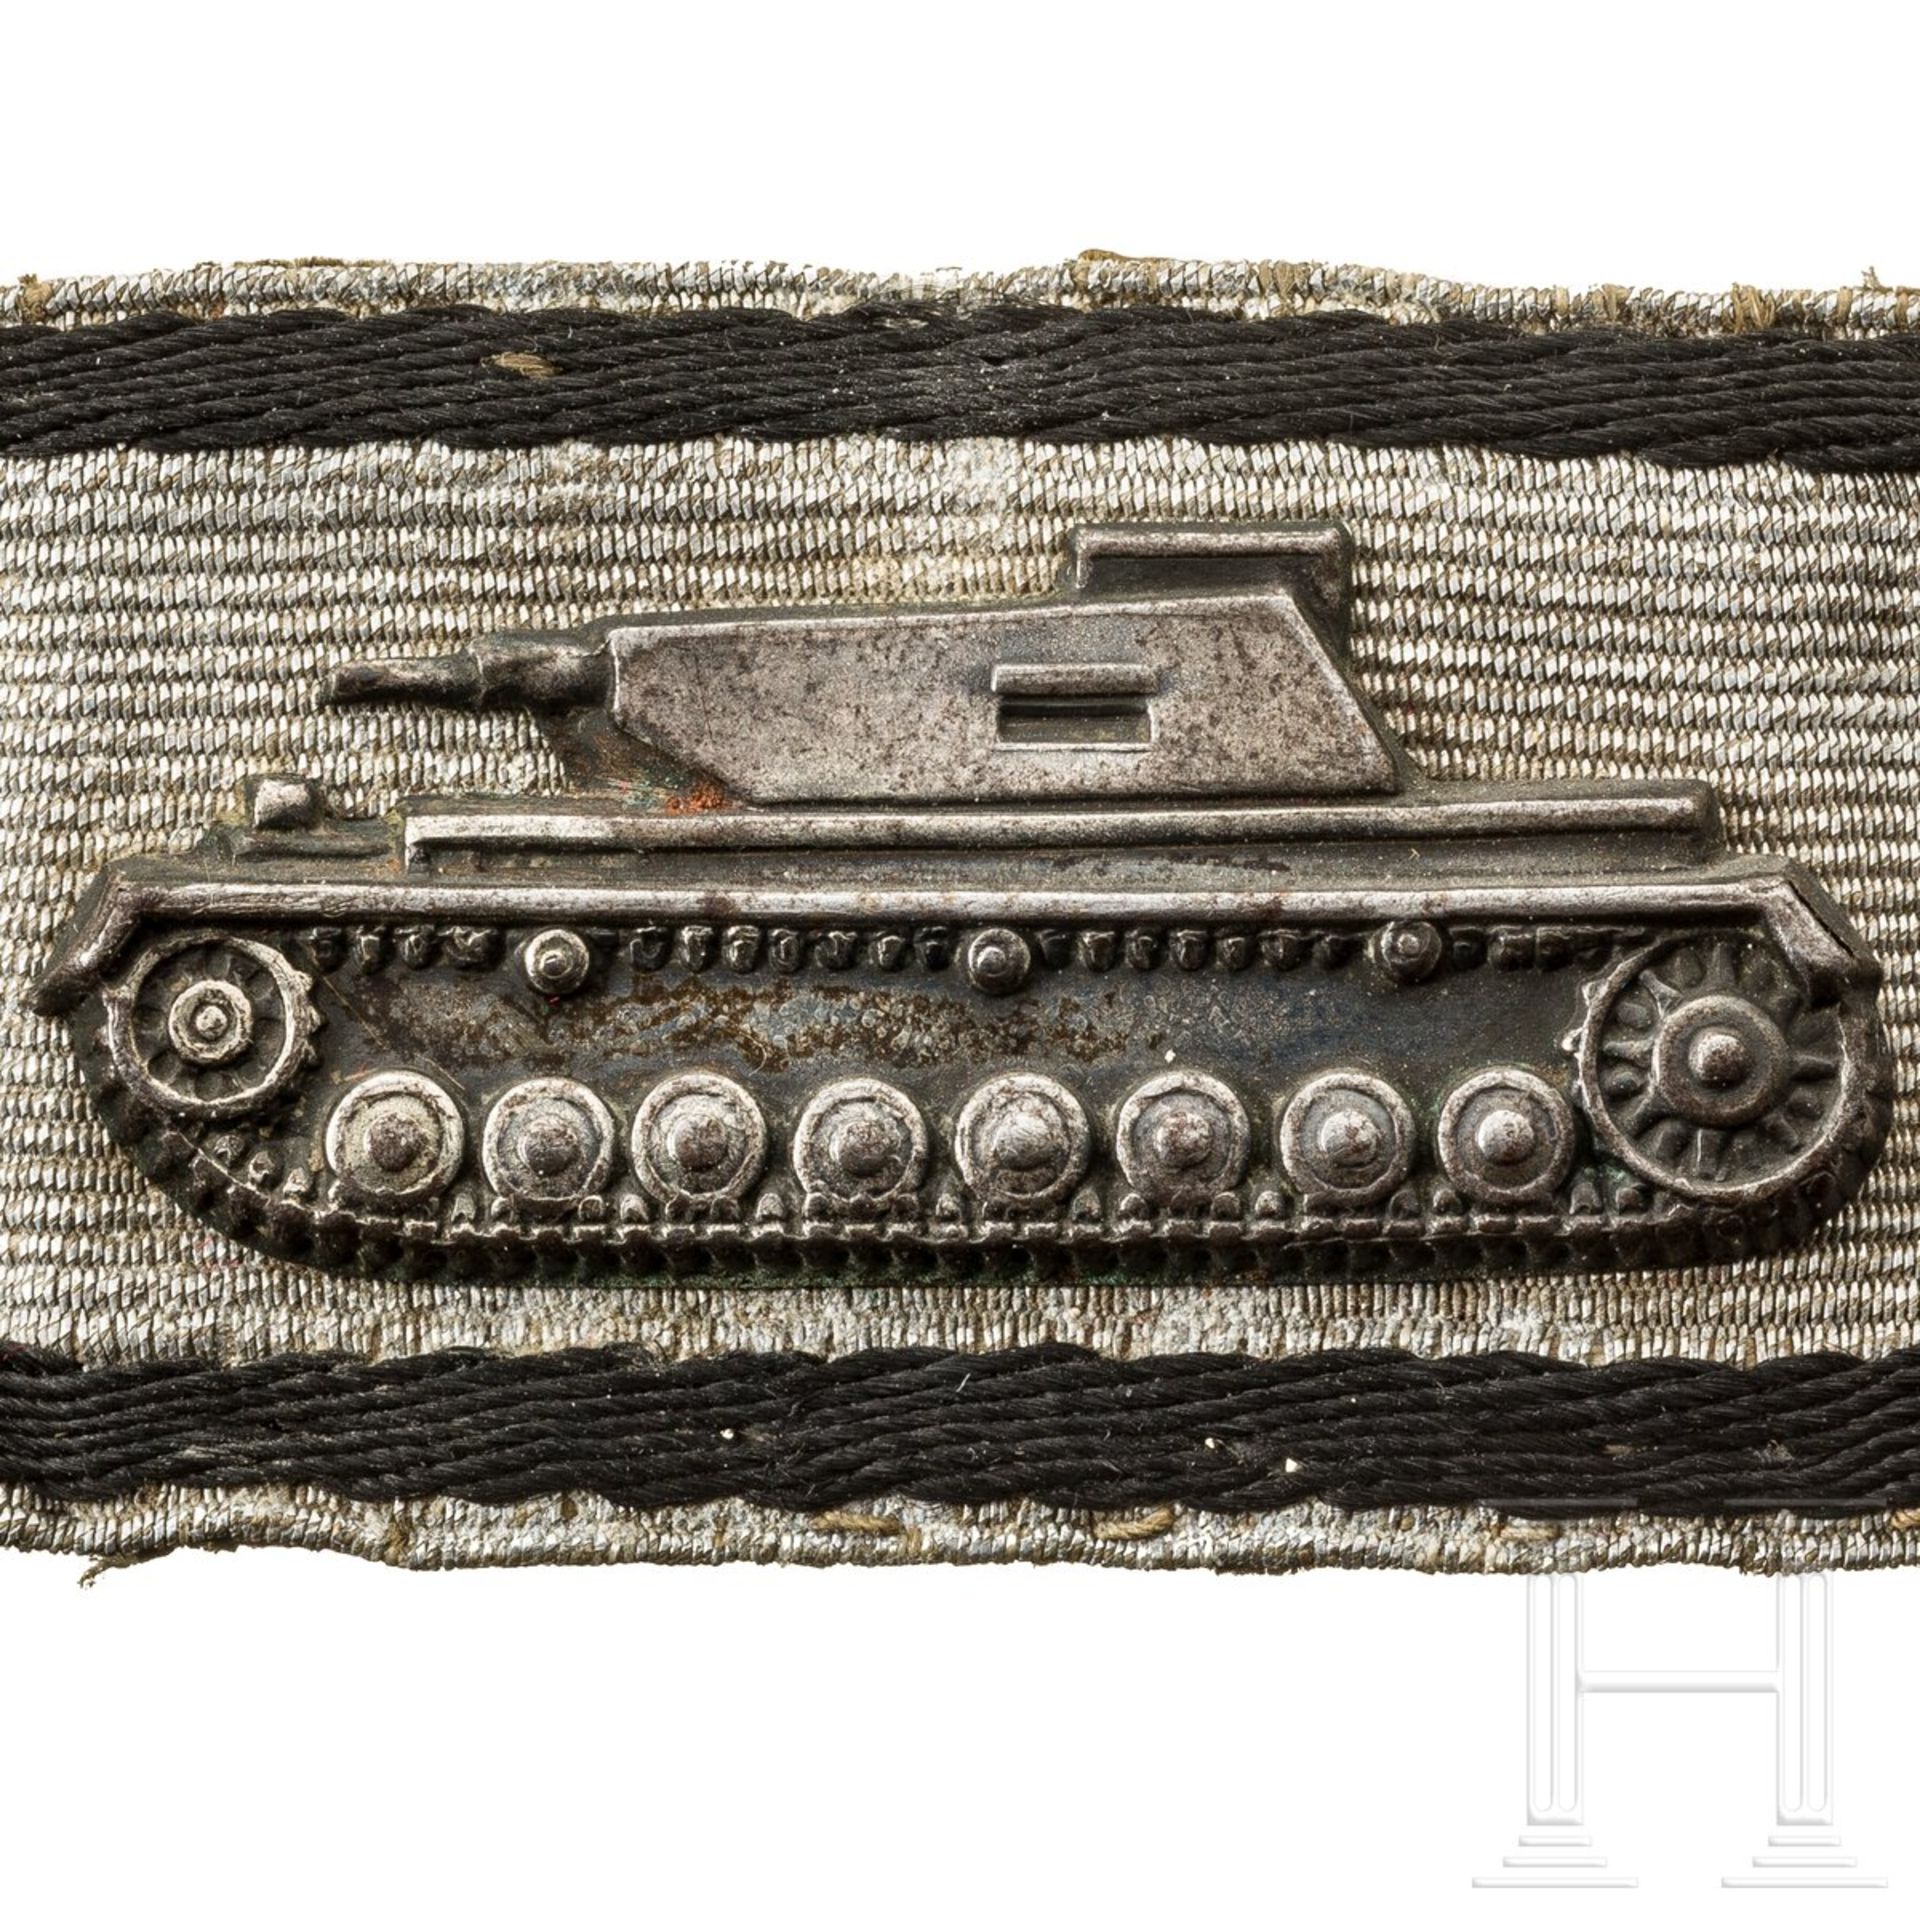 Leutnant Gerhart Klamert - Sonderabzeichen für das Niederkämpfen von Panzerkampfwagen durch Einzelkä - Image 3 of 3